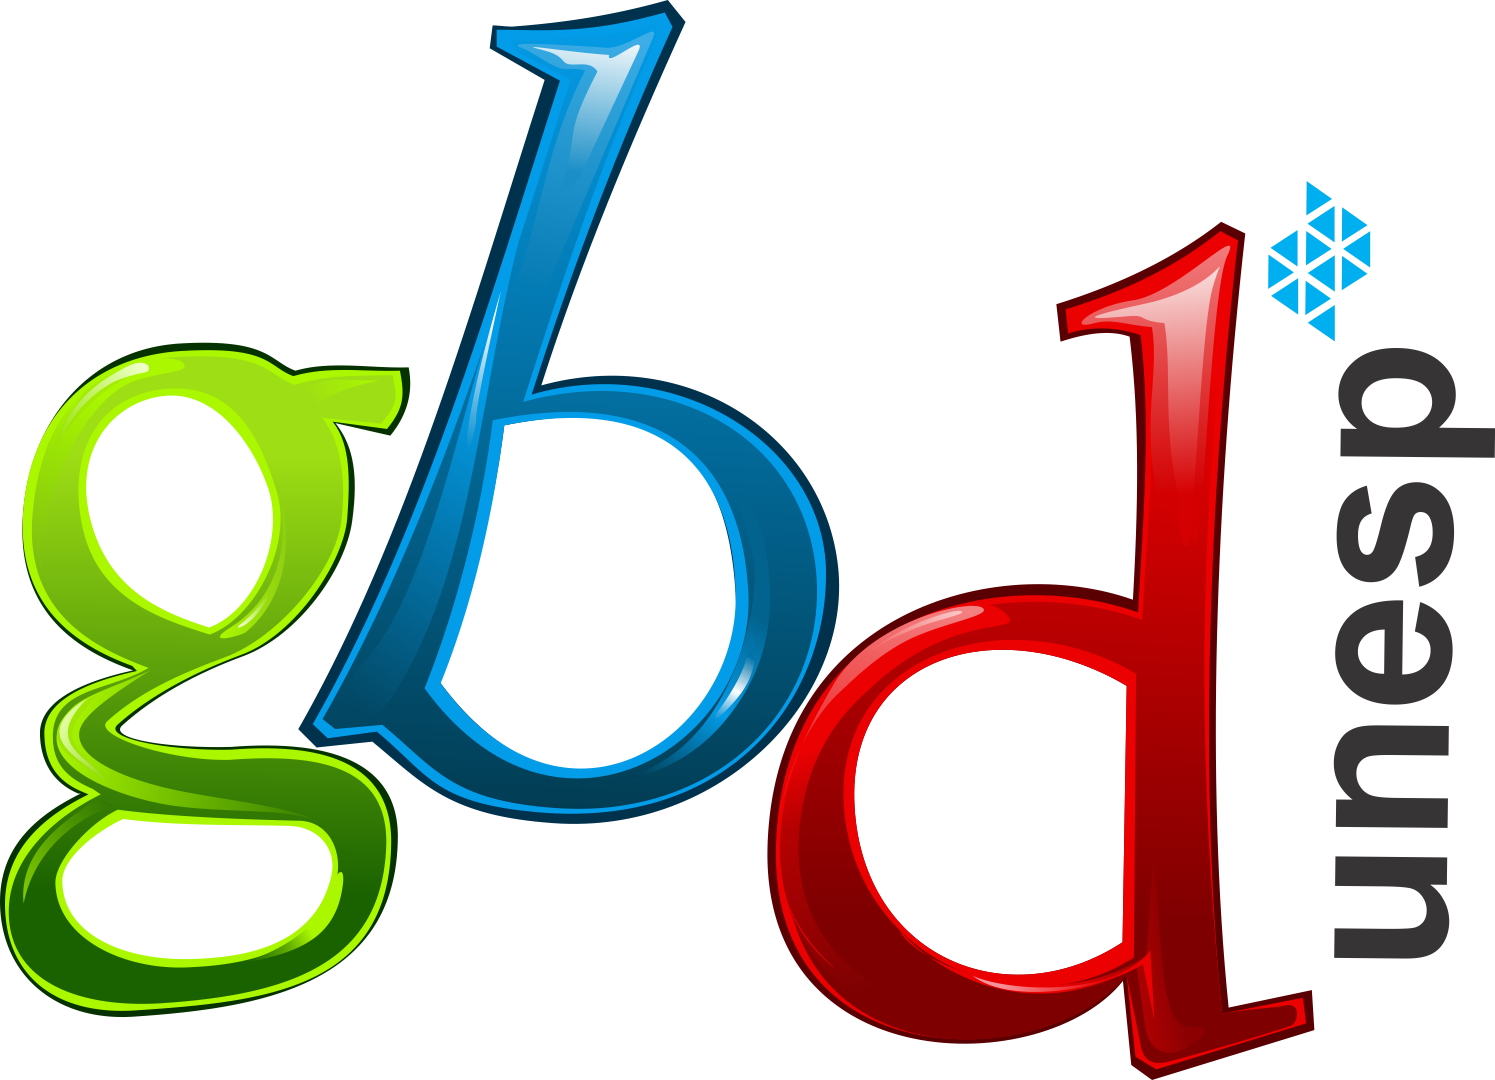 GBD logo